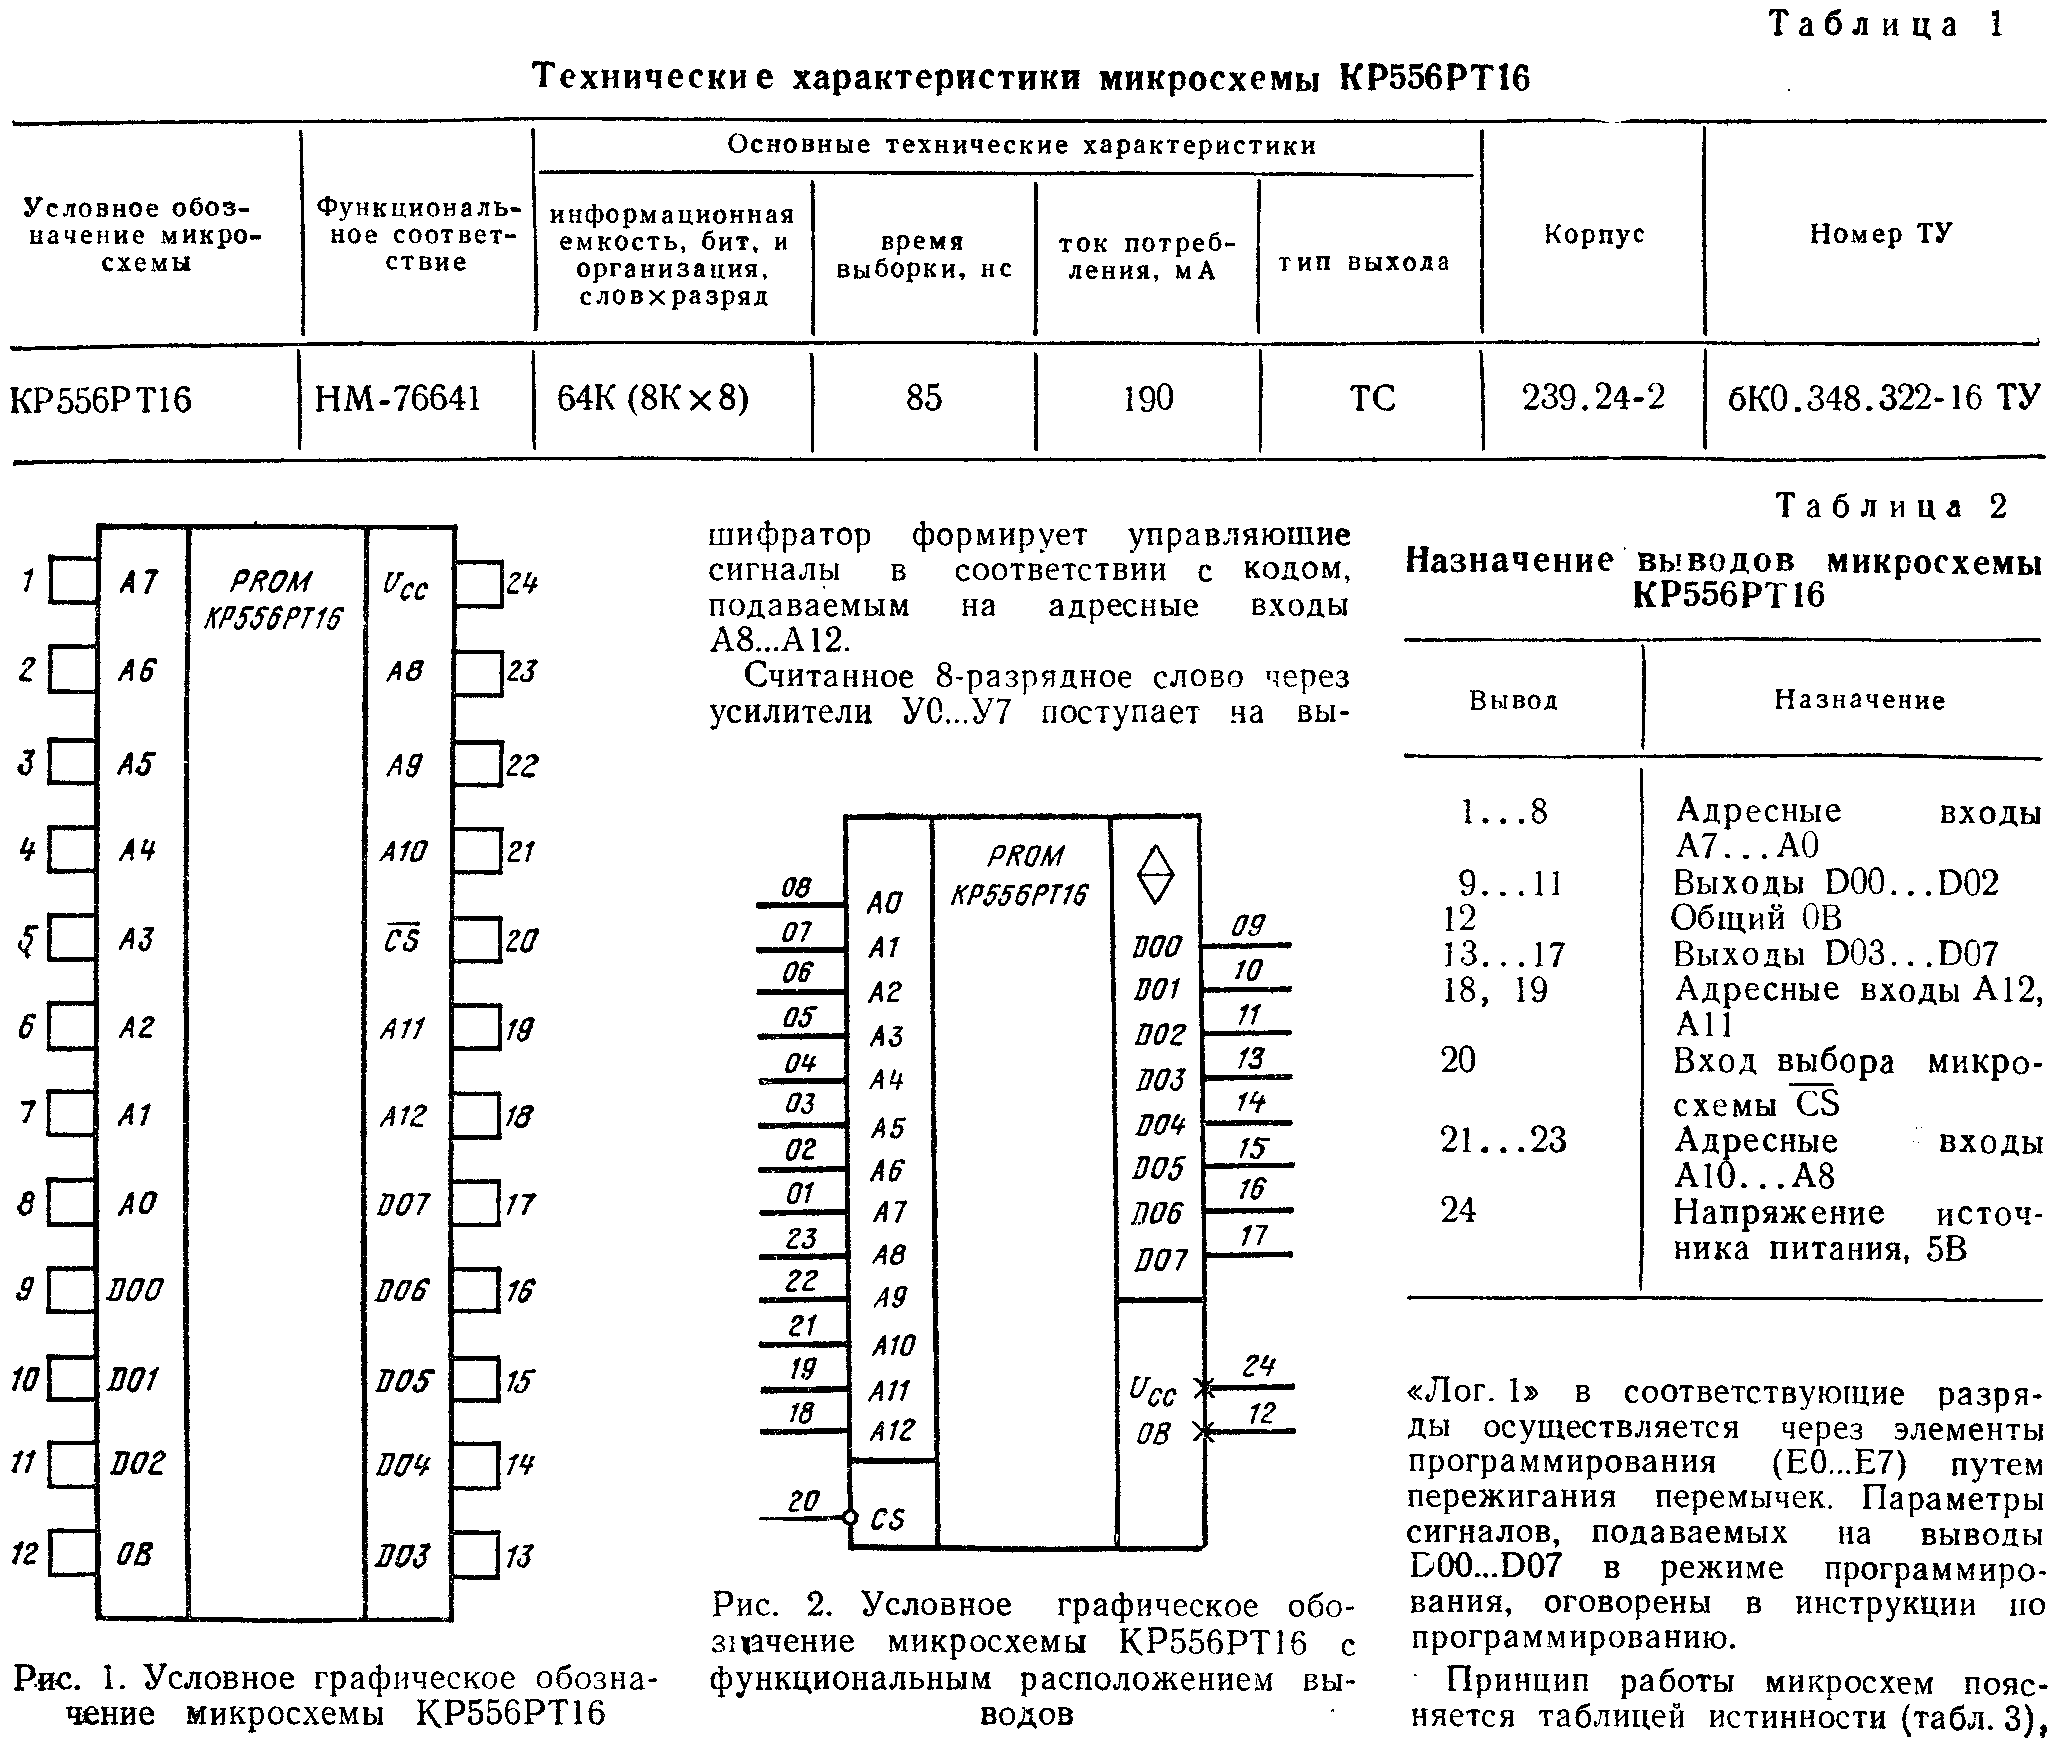 Микропроцессорные средства и системы 1987 №3 - Справочная информация .